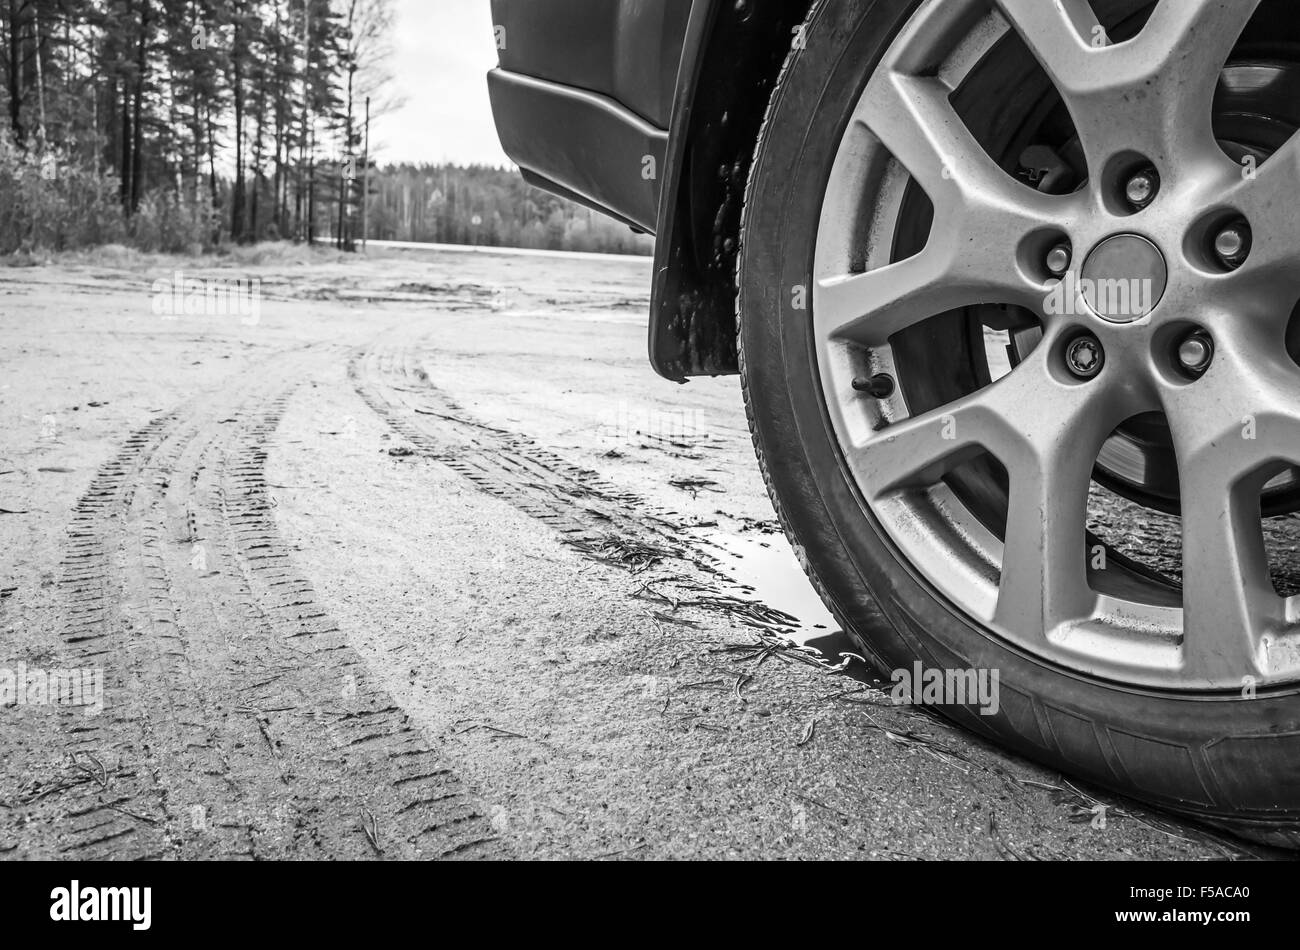 Auto-Rad mit Leichtmetall-Disc auf schmutzige Landstraße, schwarz / weiß Foto Nahaufnahme Stockfoto